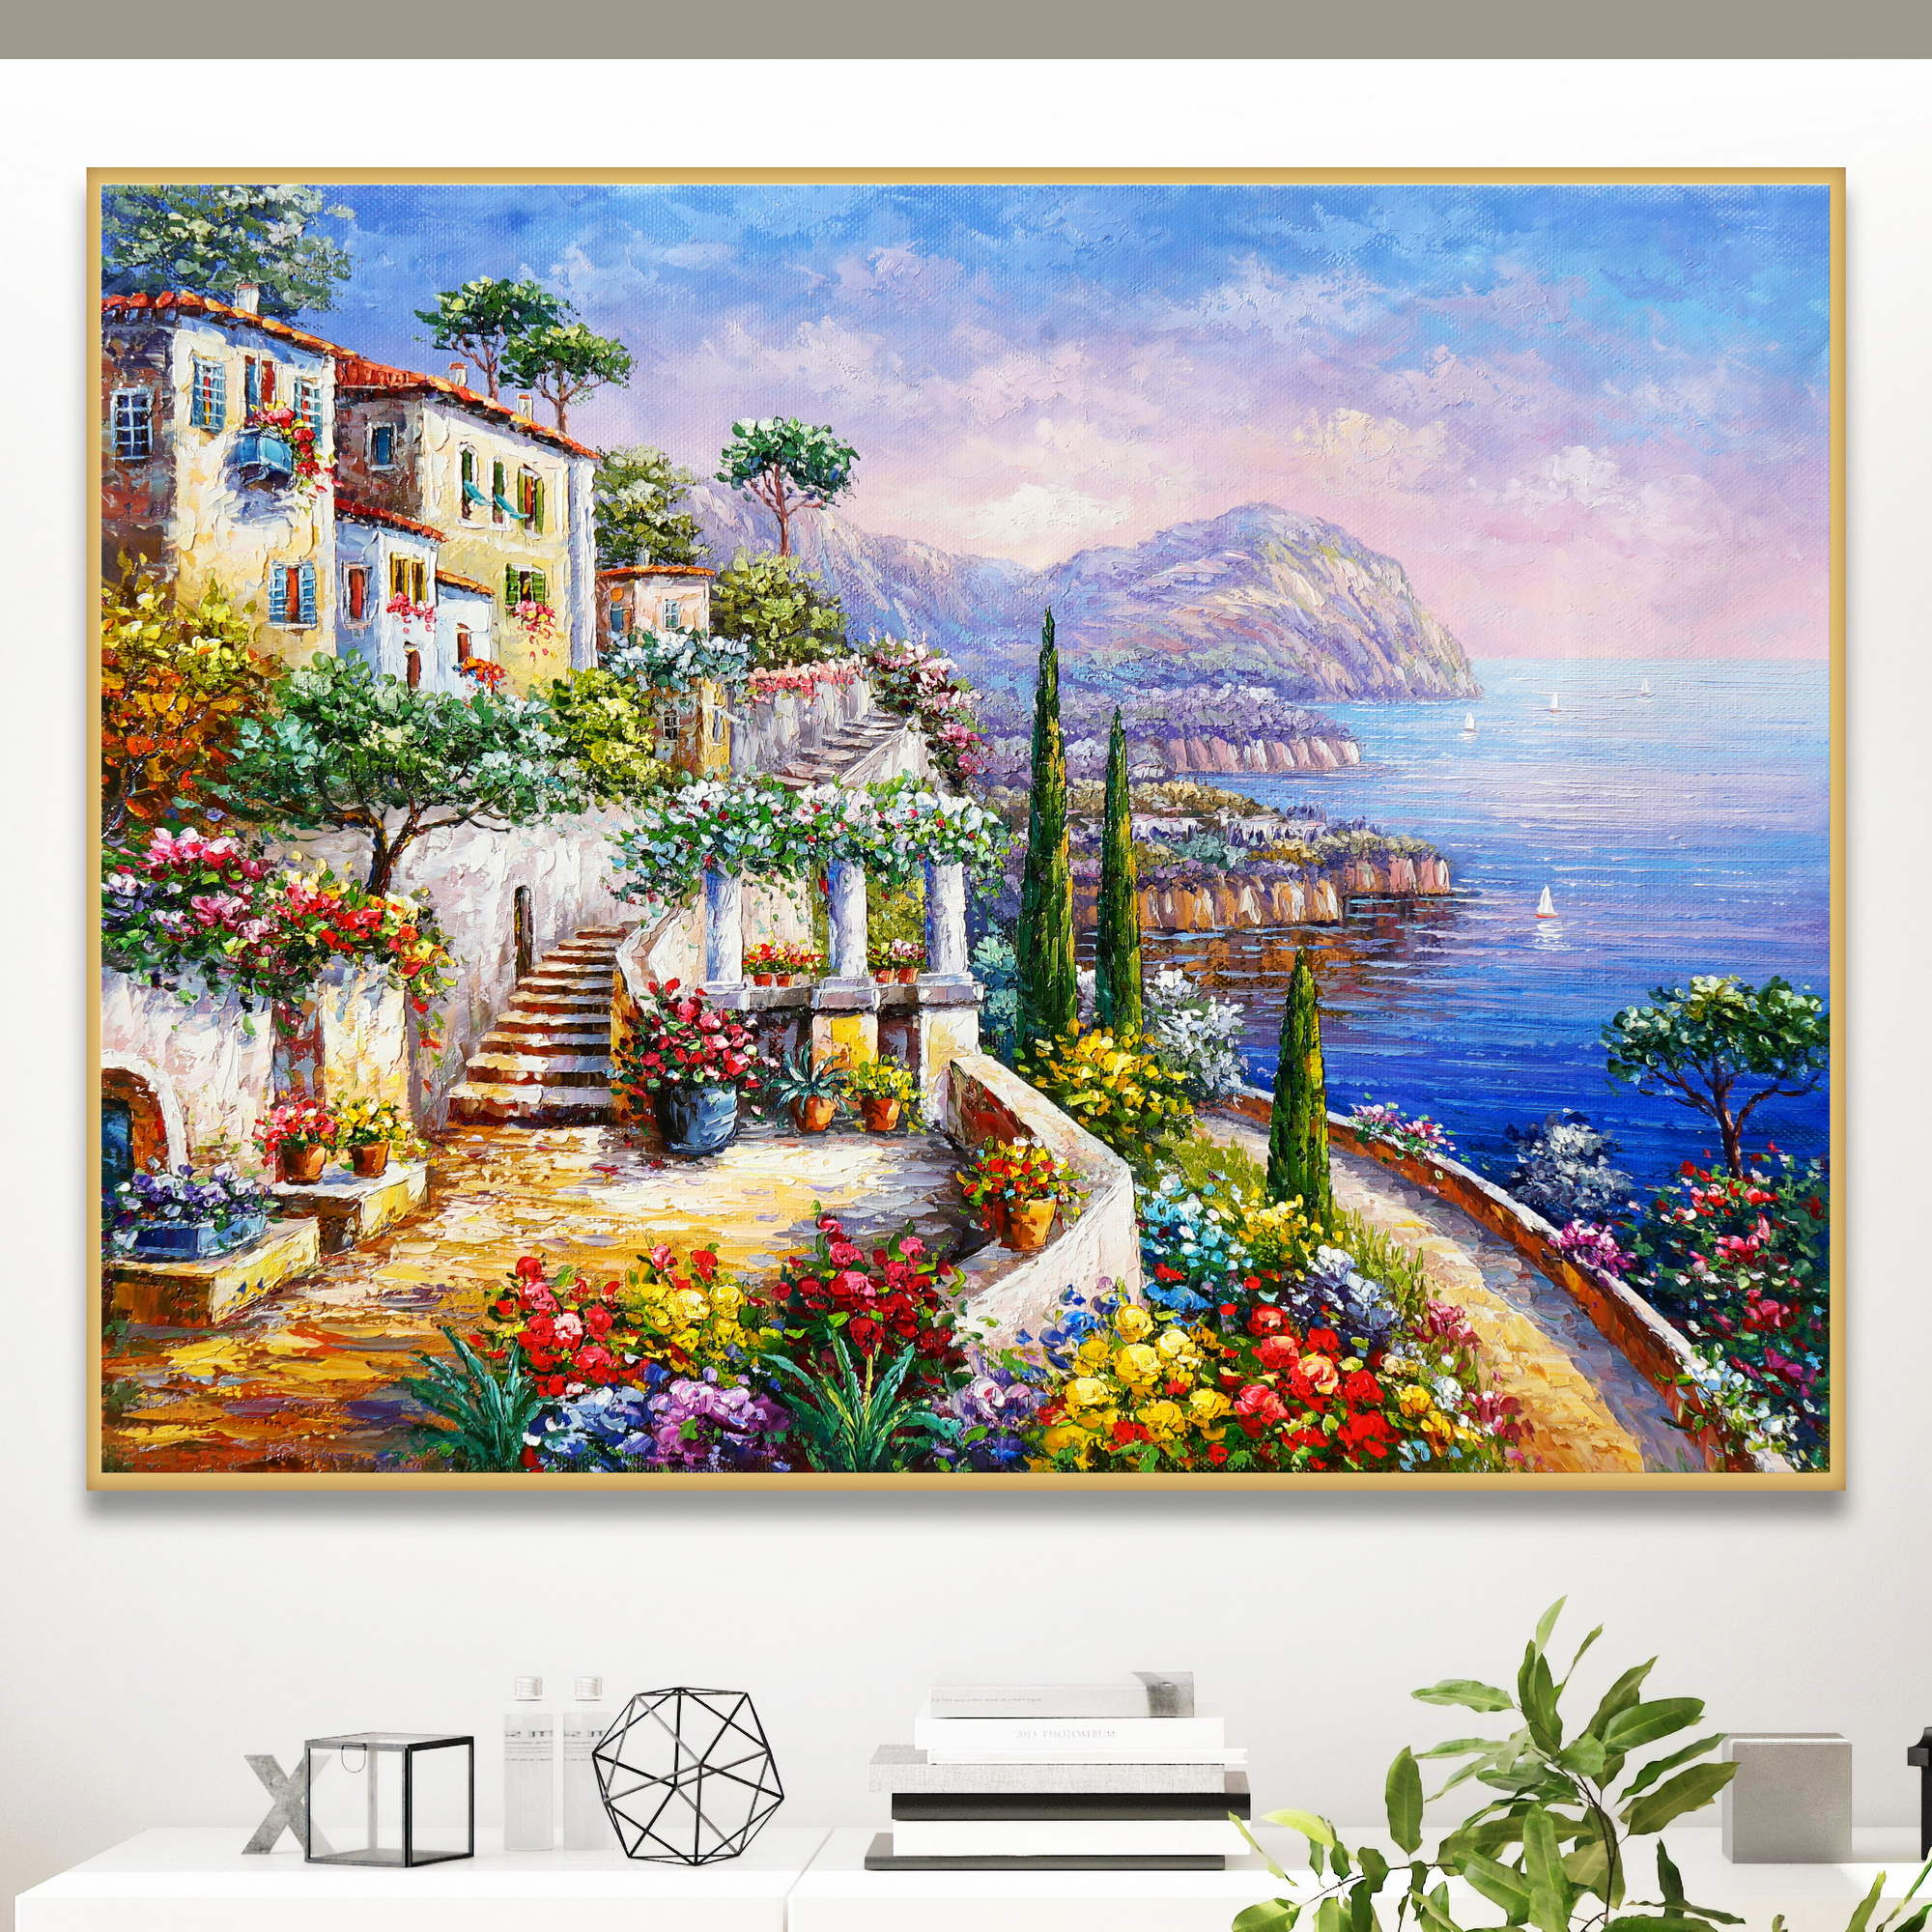 Quadro colorato con vista sul Mare Mediterraneo, case e terrazza fiorita.